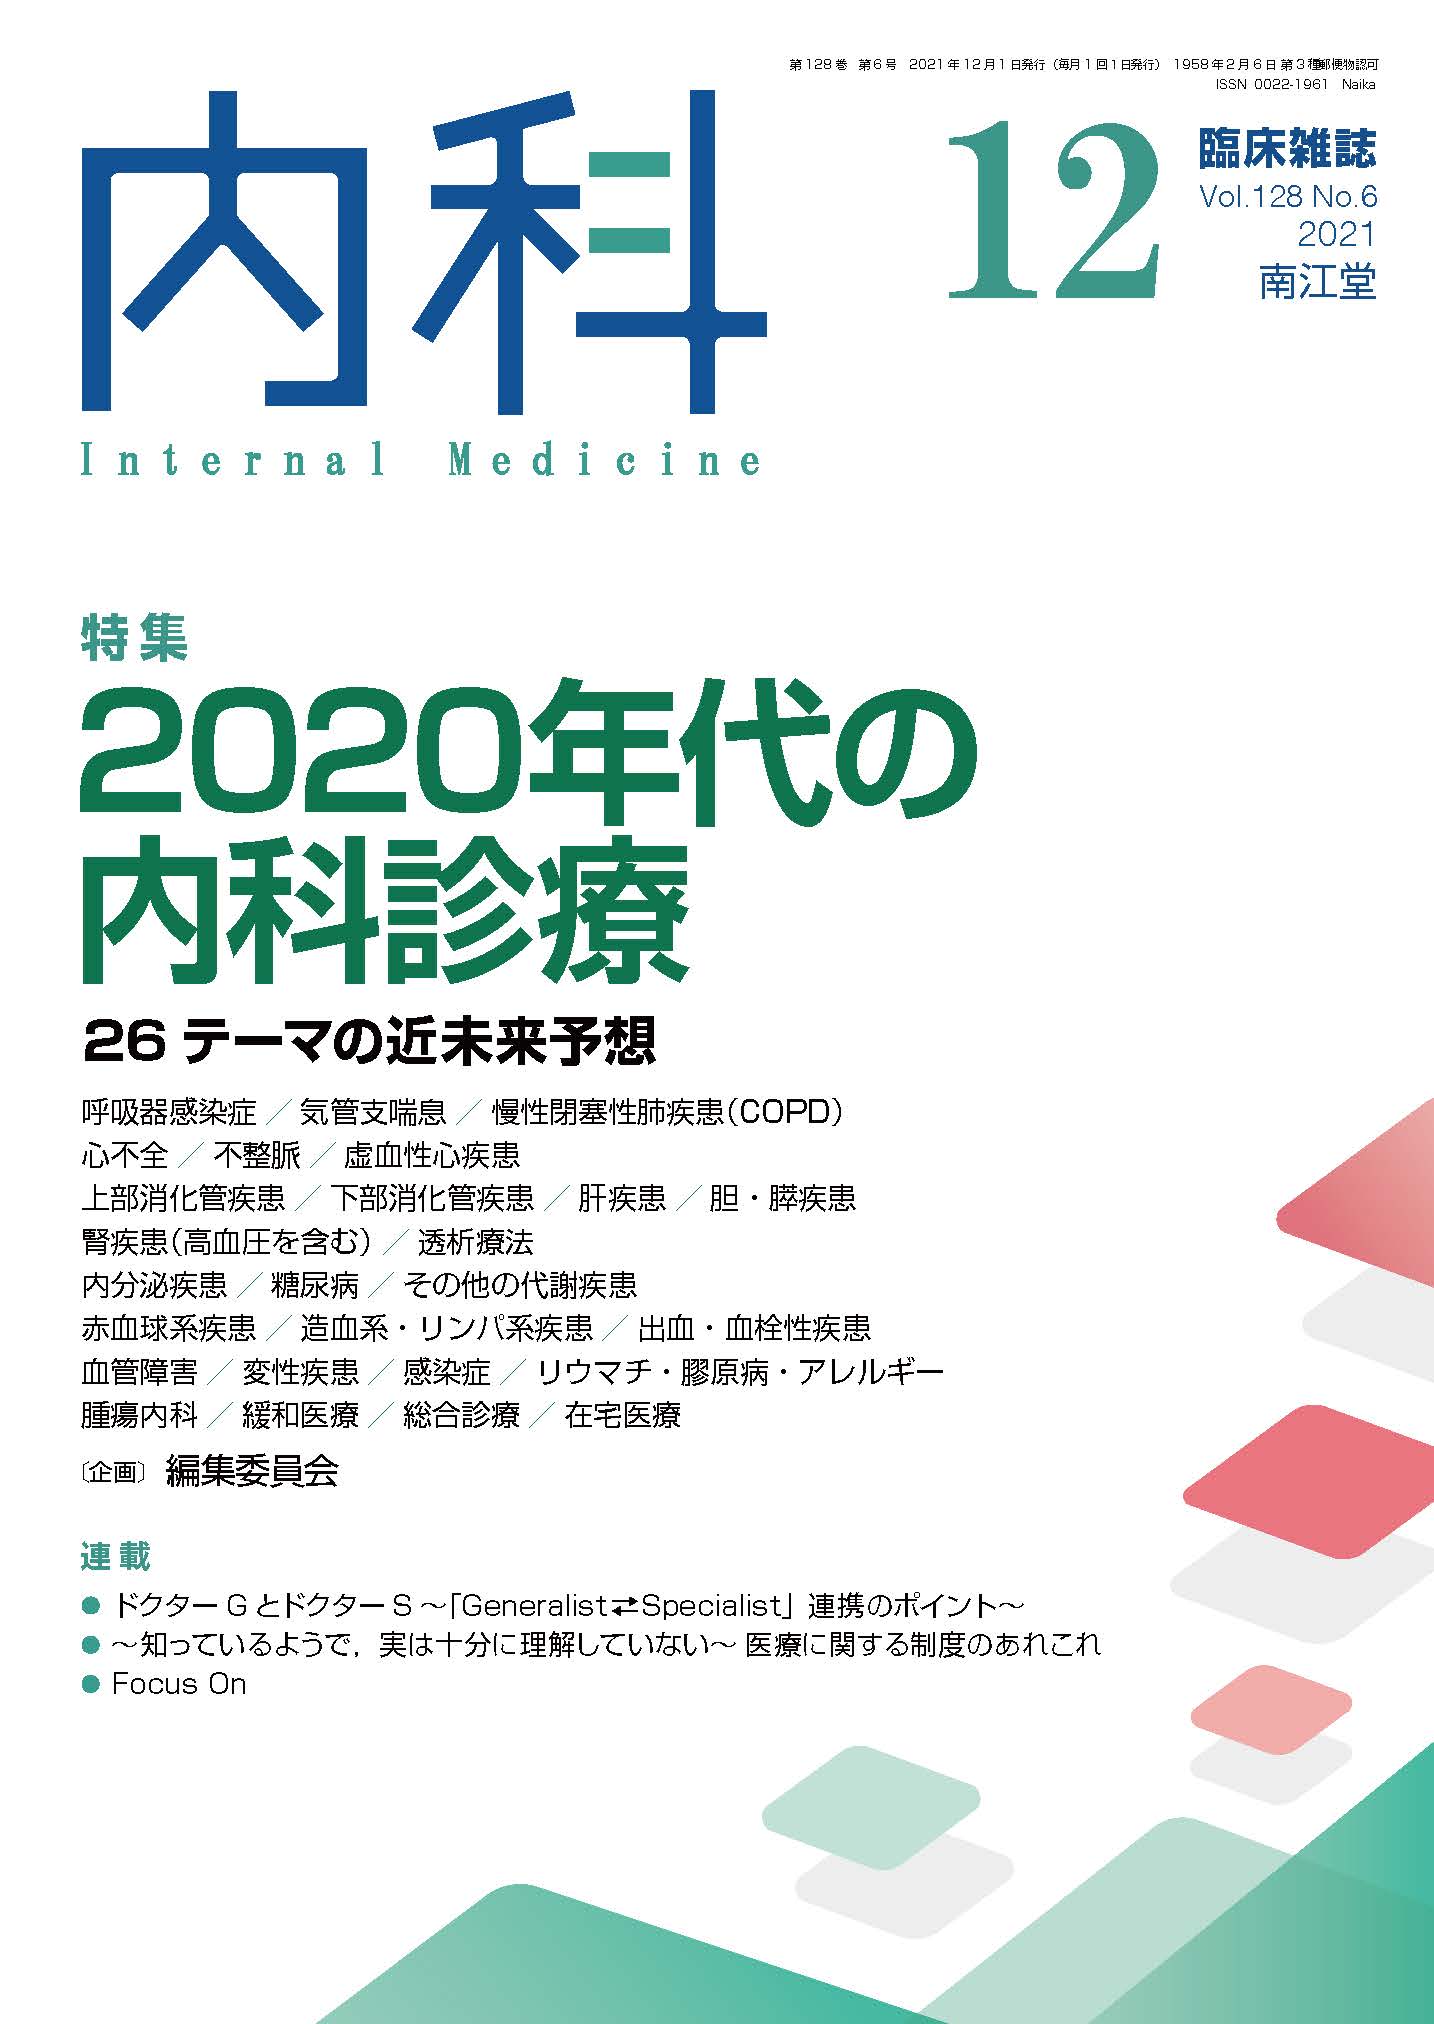 2020年代の内科診療(Vol.128 No.6)2021年12月号